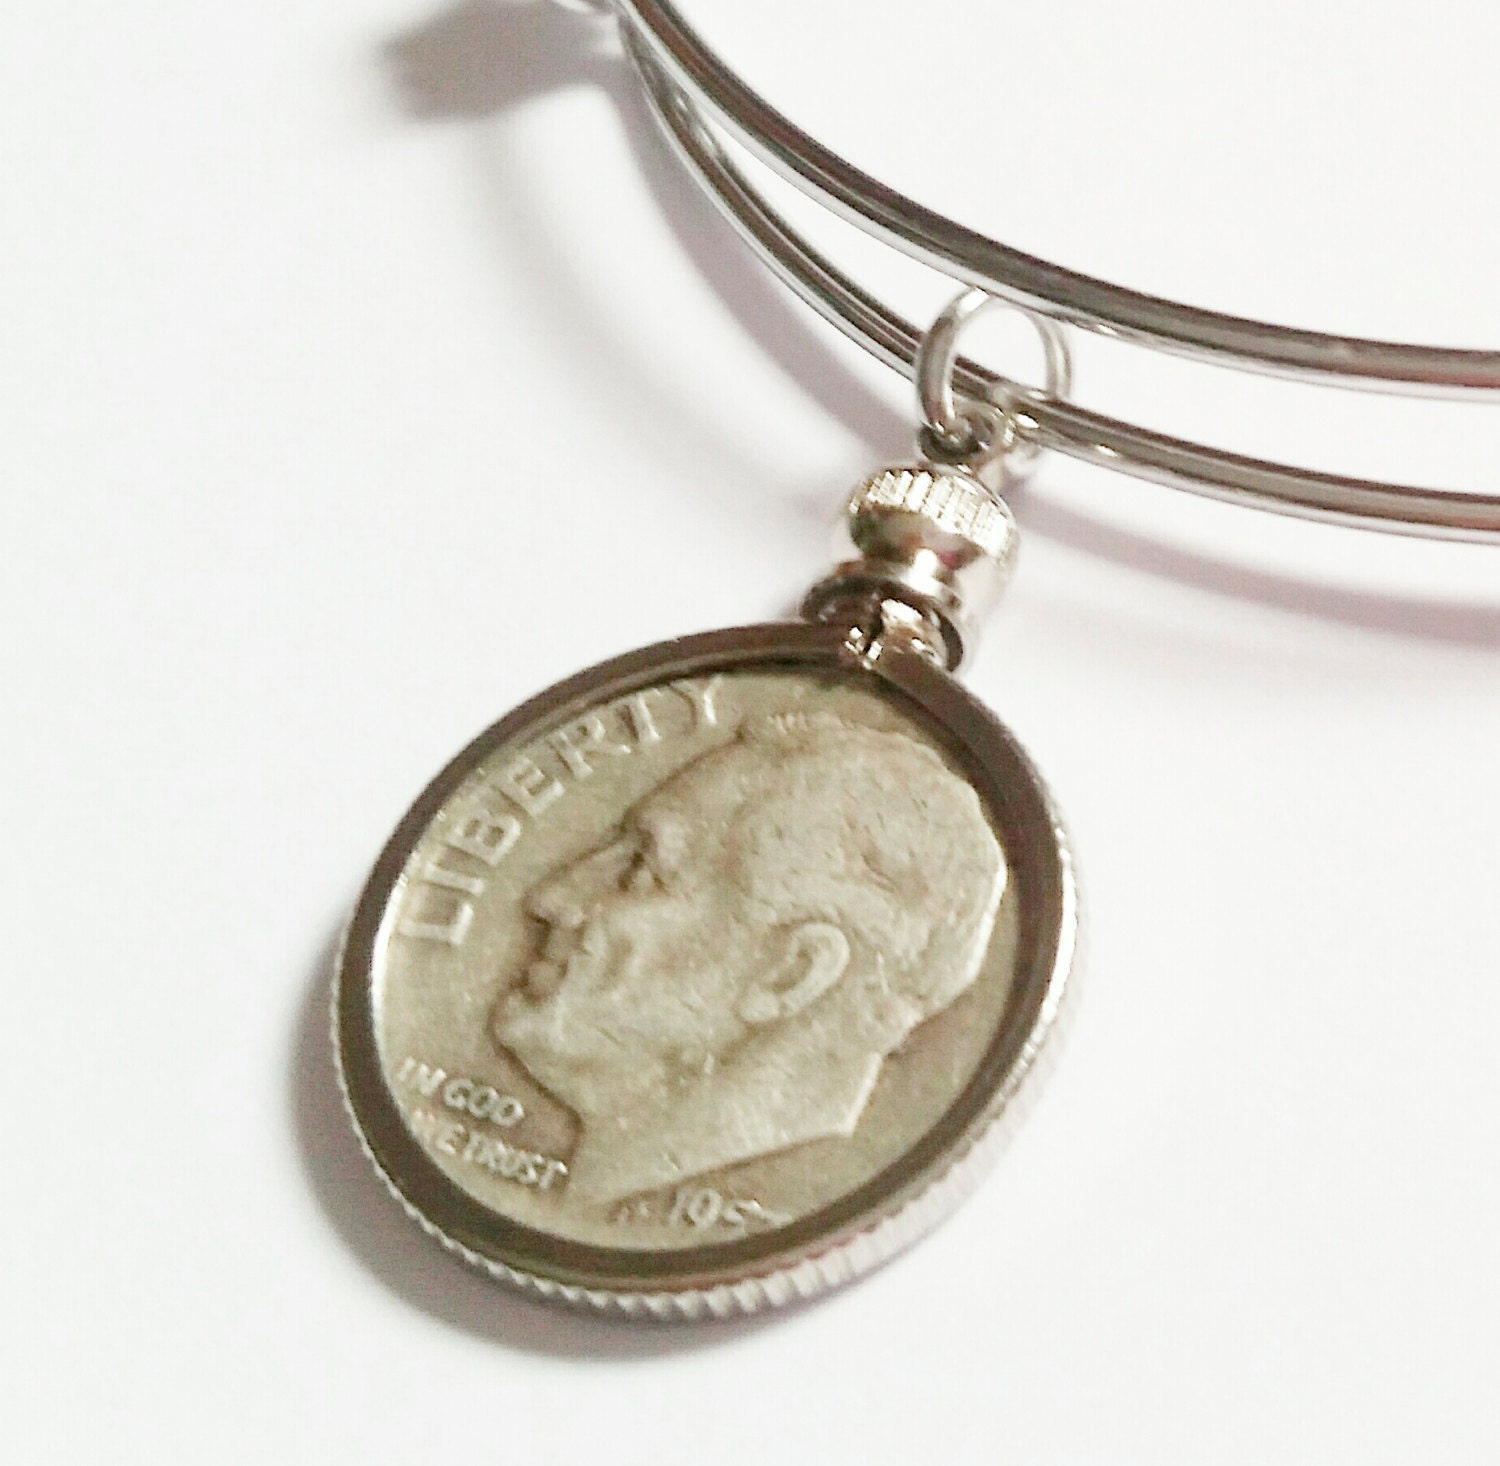 Penny USA / 1 cent Coin Holder Bezel ~ Goldtone charm, necklace, pendant,  pk/10 | eBay